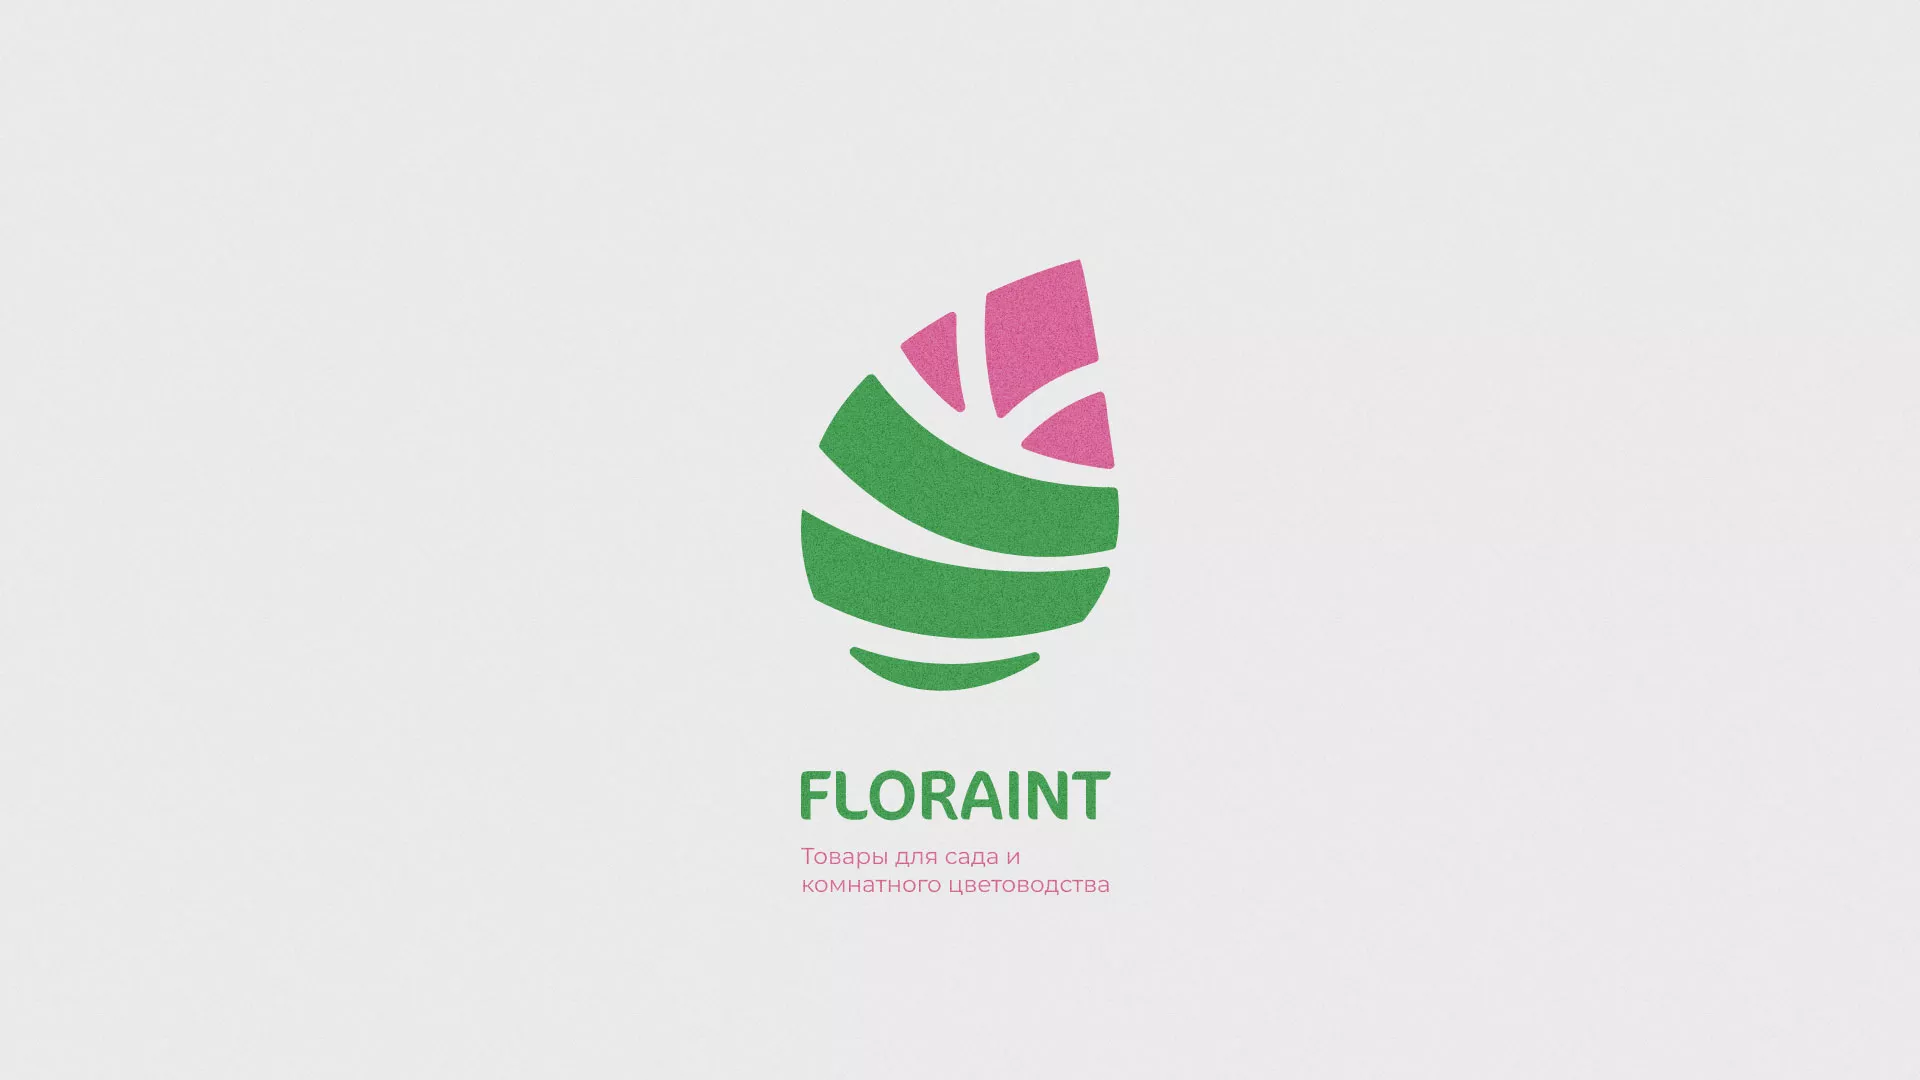 Разработка оформления профиля Instagram для магазина «Floraint» в Сенгилее